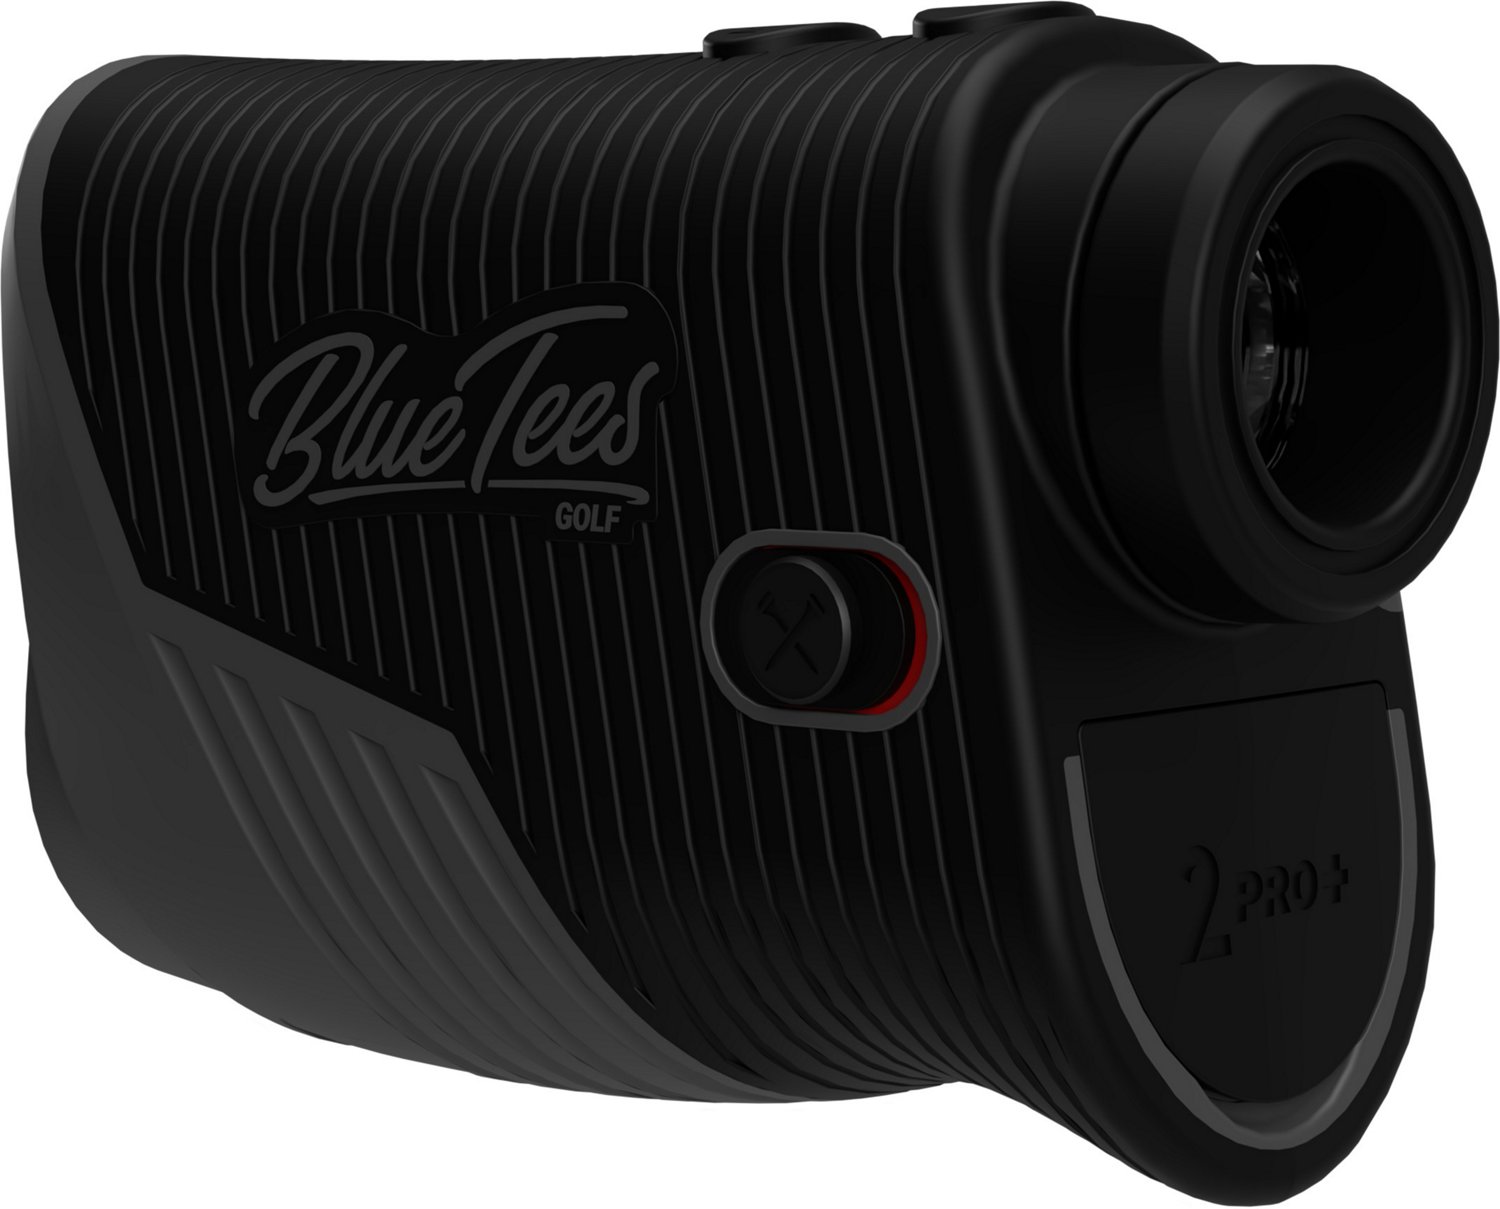 Blue Tees Golf Series 2 Pro+ Rangefinder                                                                                         - view number 2